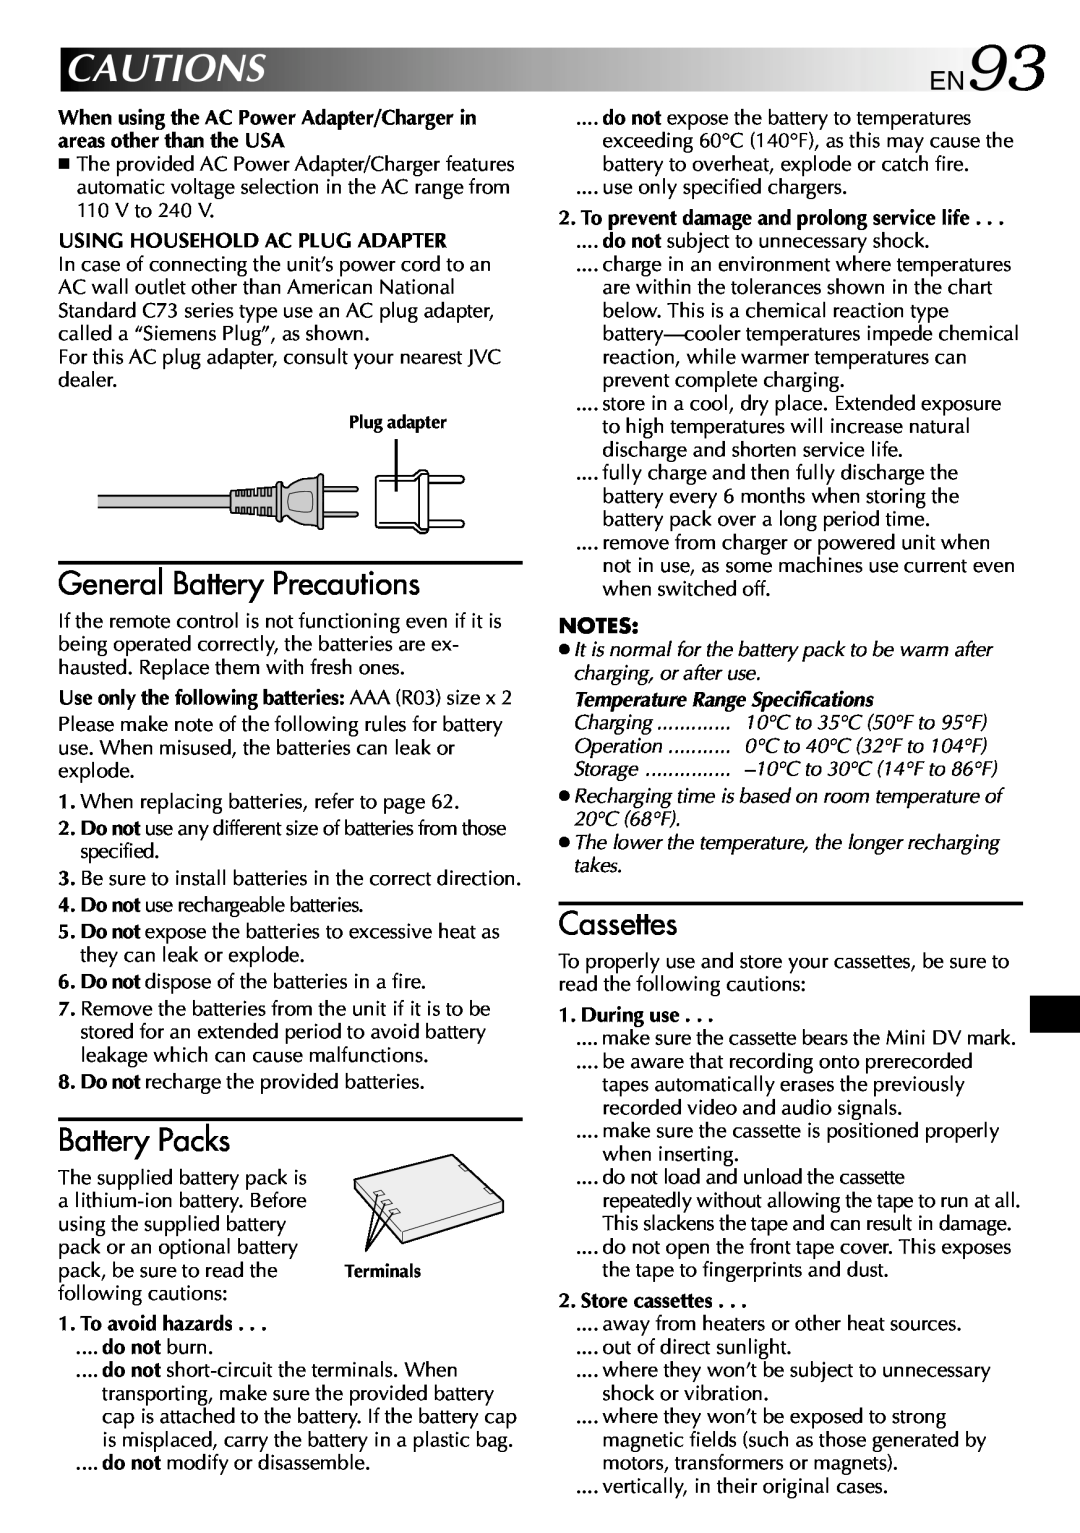 JVC GR-DVP3 specifications Cautions, General Battery Precautions, Battery Packs, Cassettes, EN93 